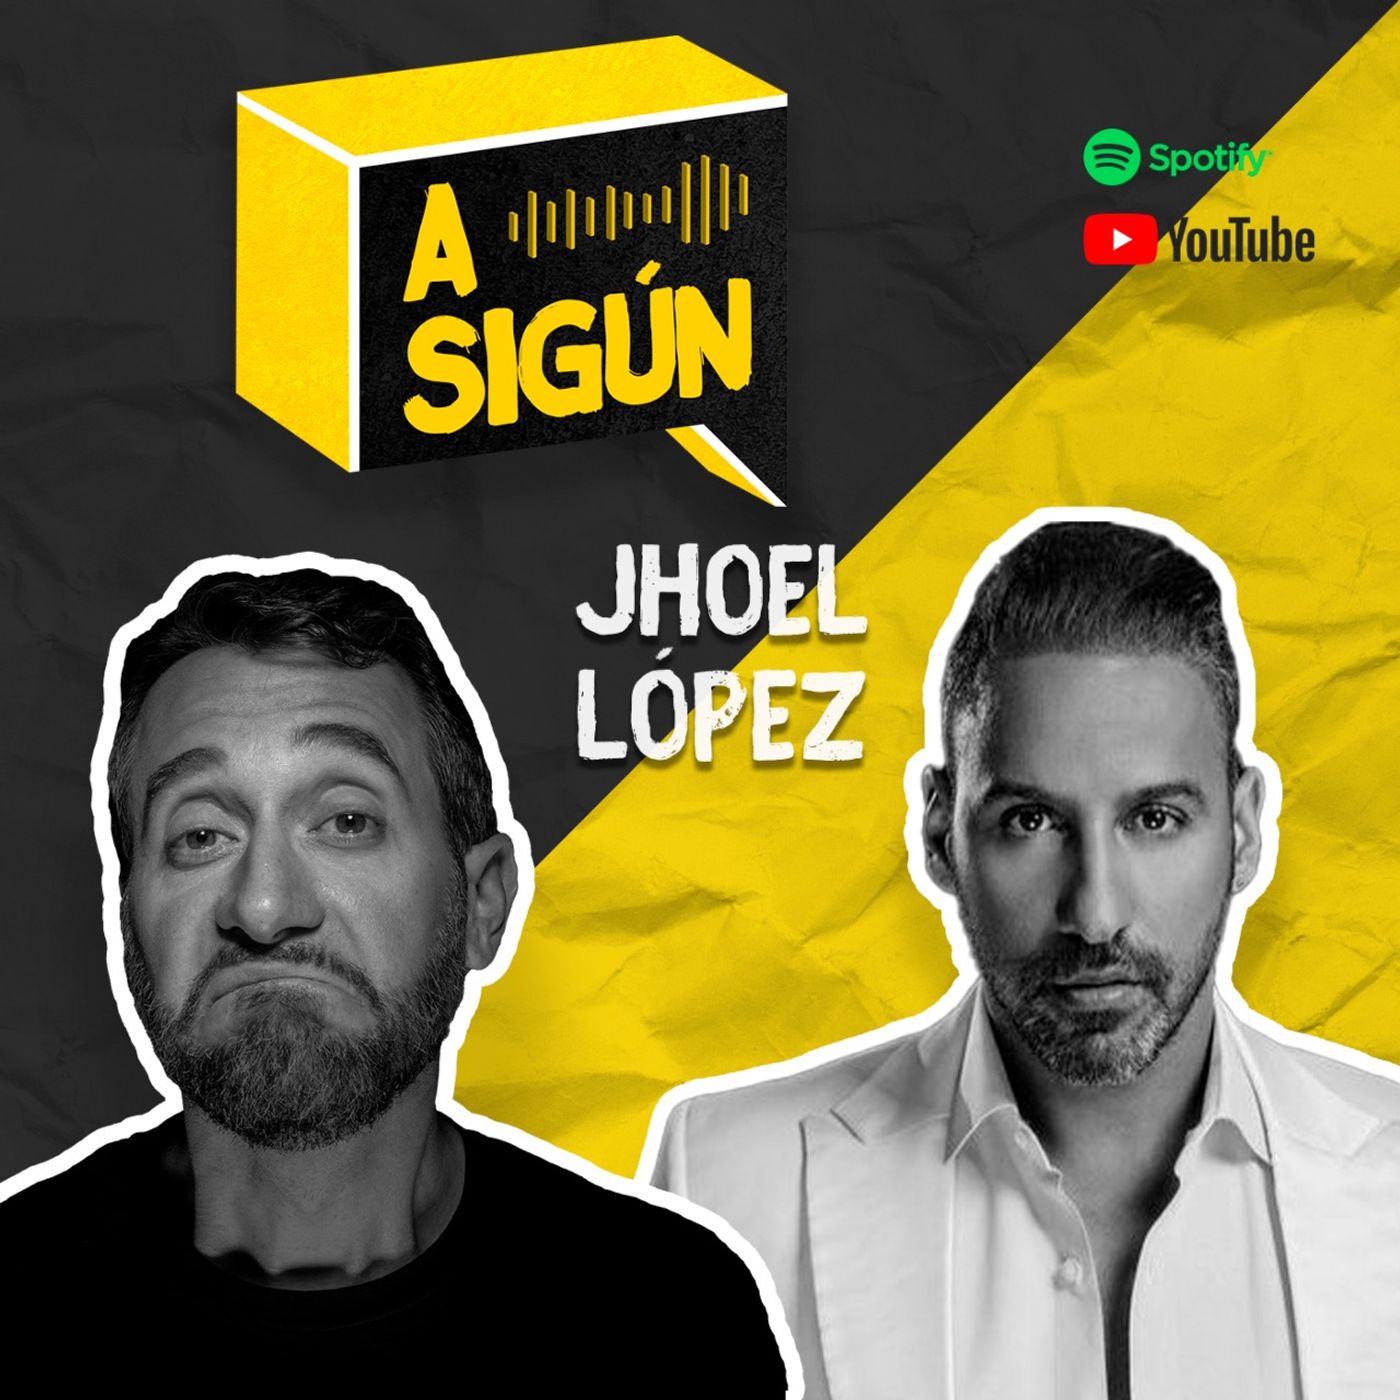 035. A SIGÚN: Jhoel López